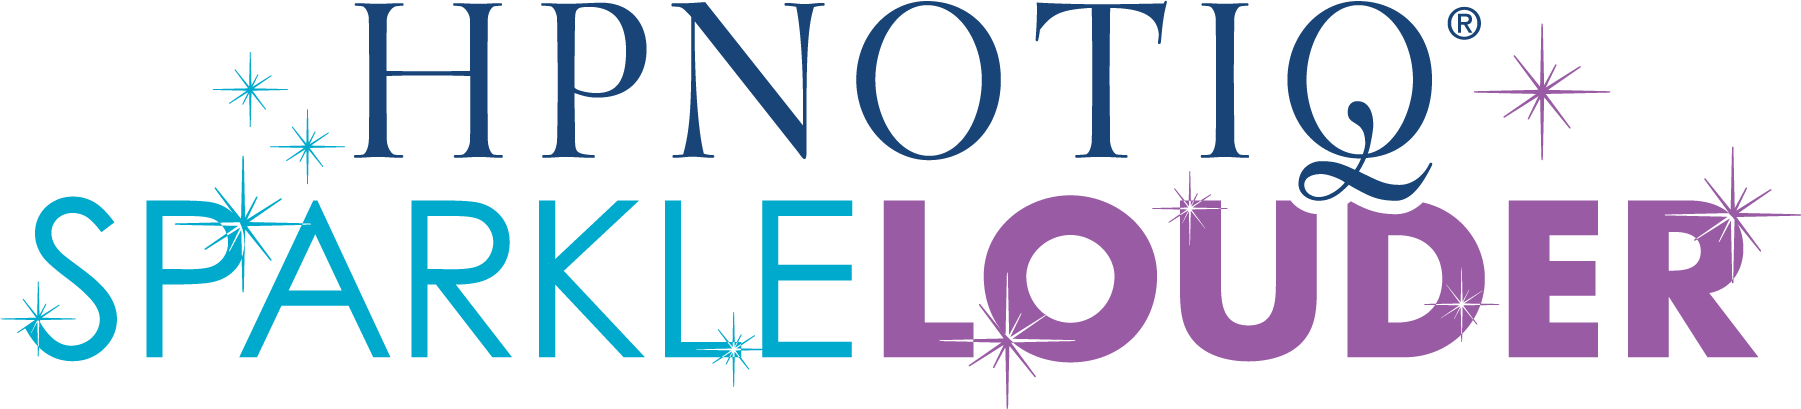 Hpnotiq Logo - Hpnotiq – Gotta Love Must Have